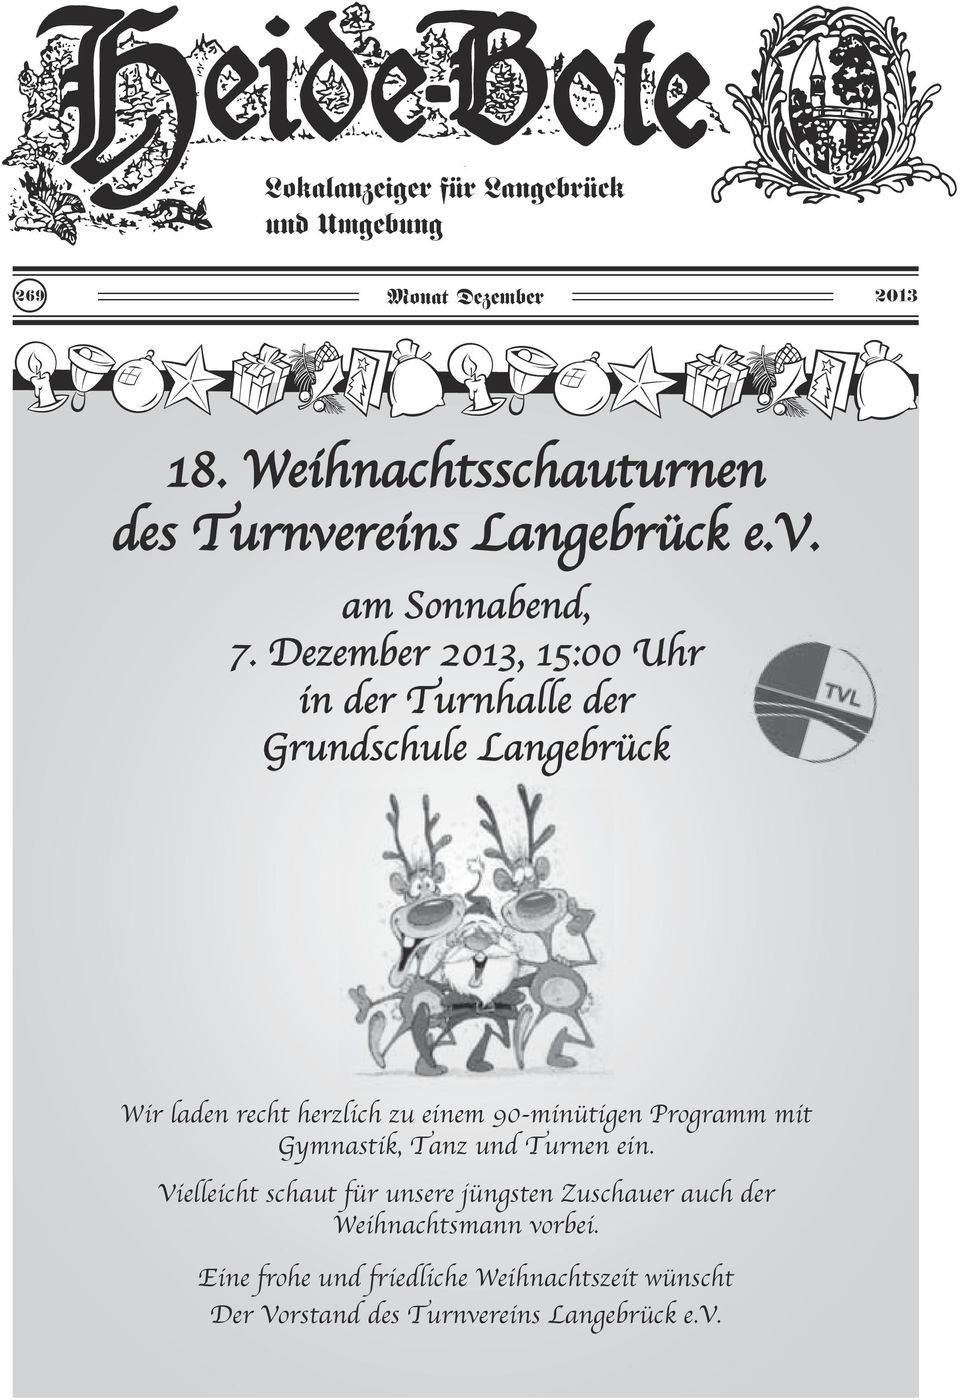 Dezember 2013, 15:00 Uhr in der Turnhalle der Grundschule Langebrück Wir laden recht herzlich zu einem 90-minütigen